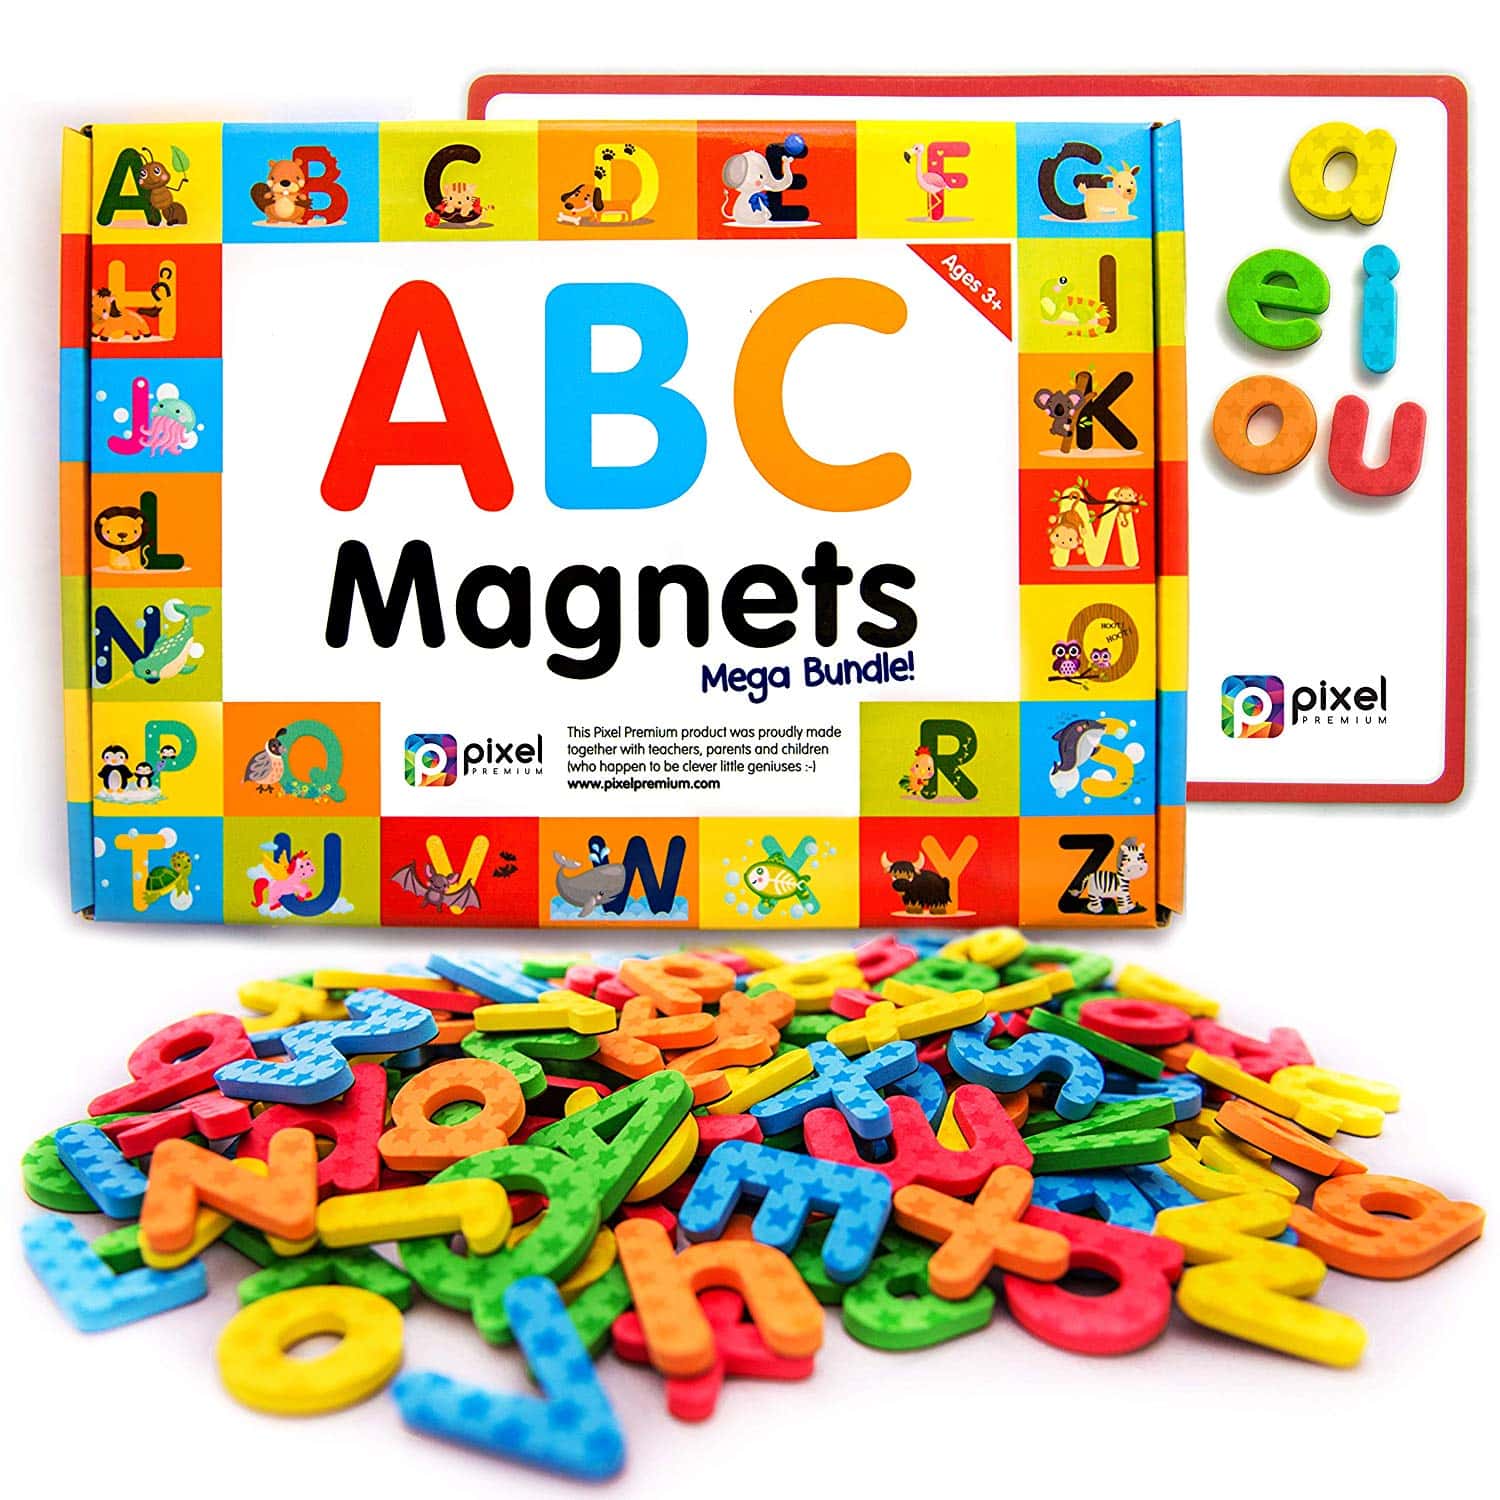 LIGHTNING DEAL ALERT! ABC Magnets for Kids – 25% off